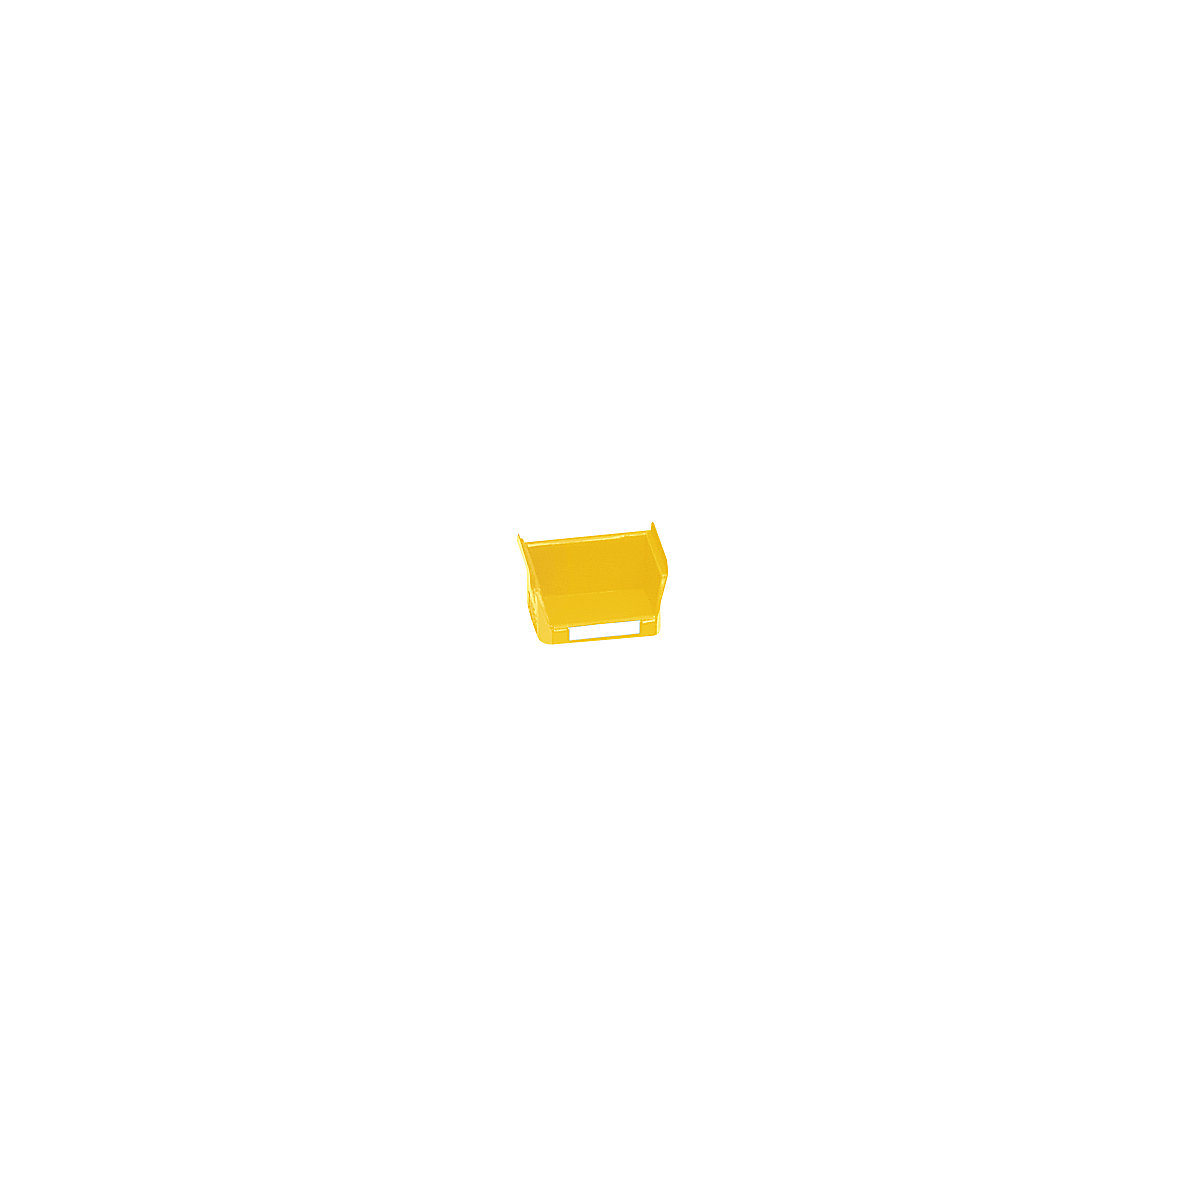 Otvorena skladišna kutija od polietilena – mauser, DxŠxV 85 x 100 x 50 mm, u žutoj boji, pak. 50 kom.-6